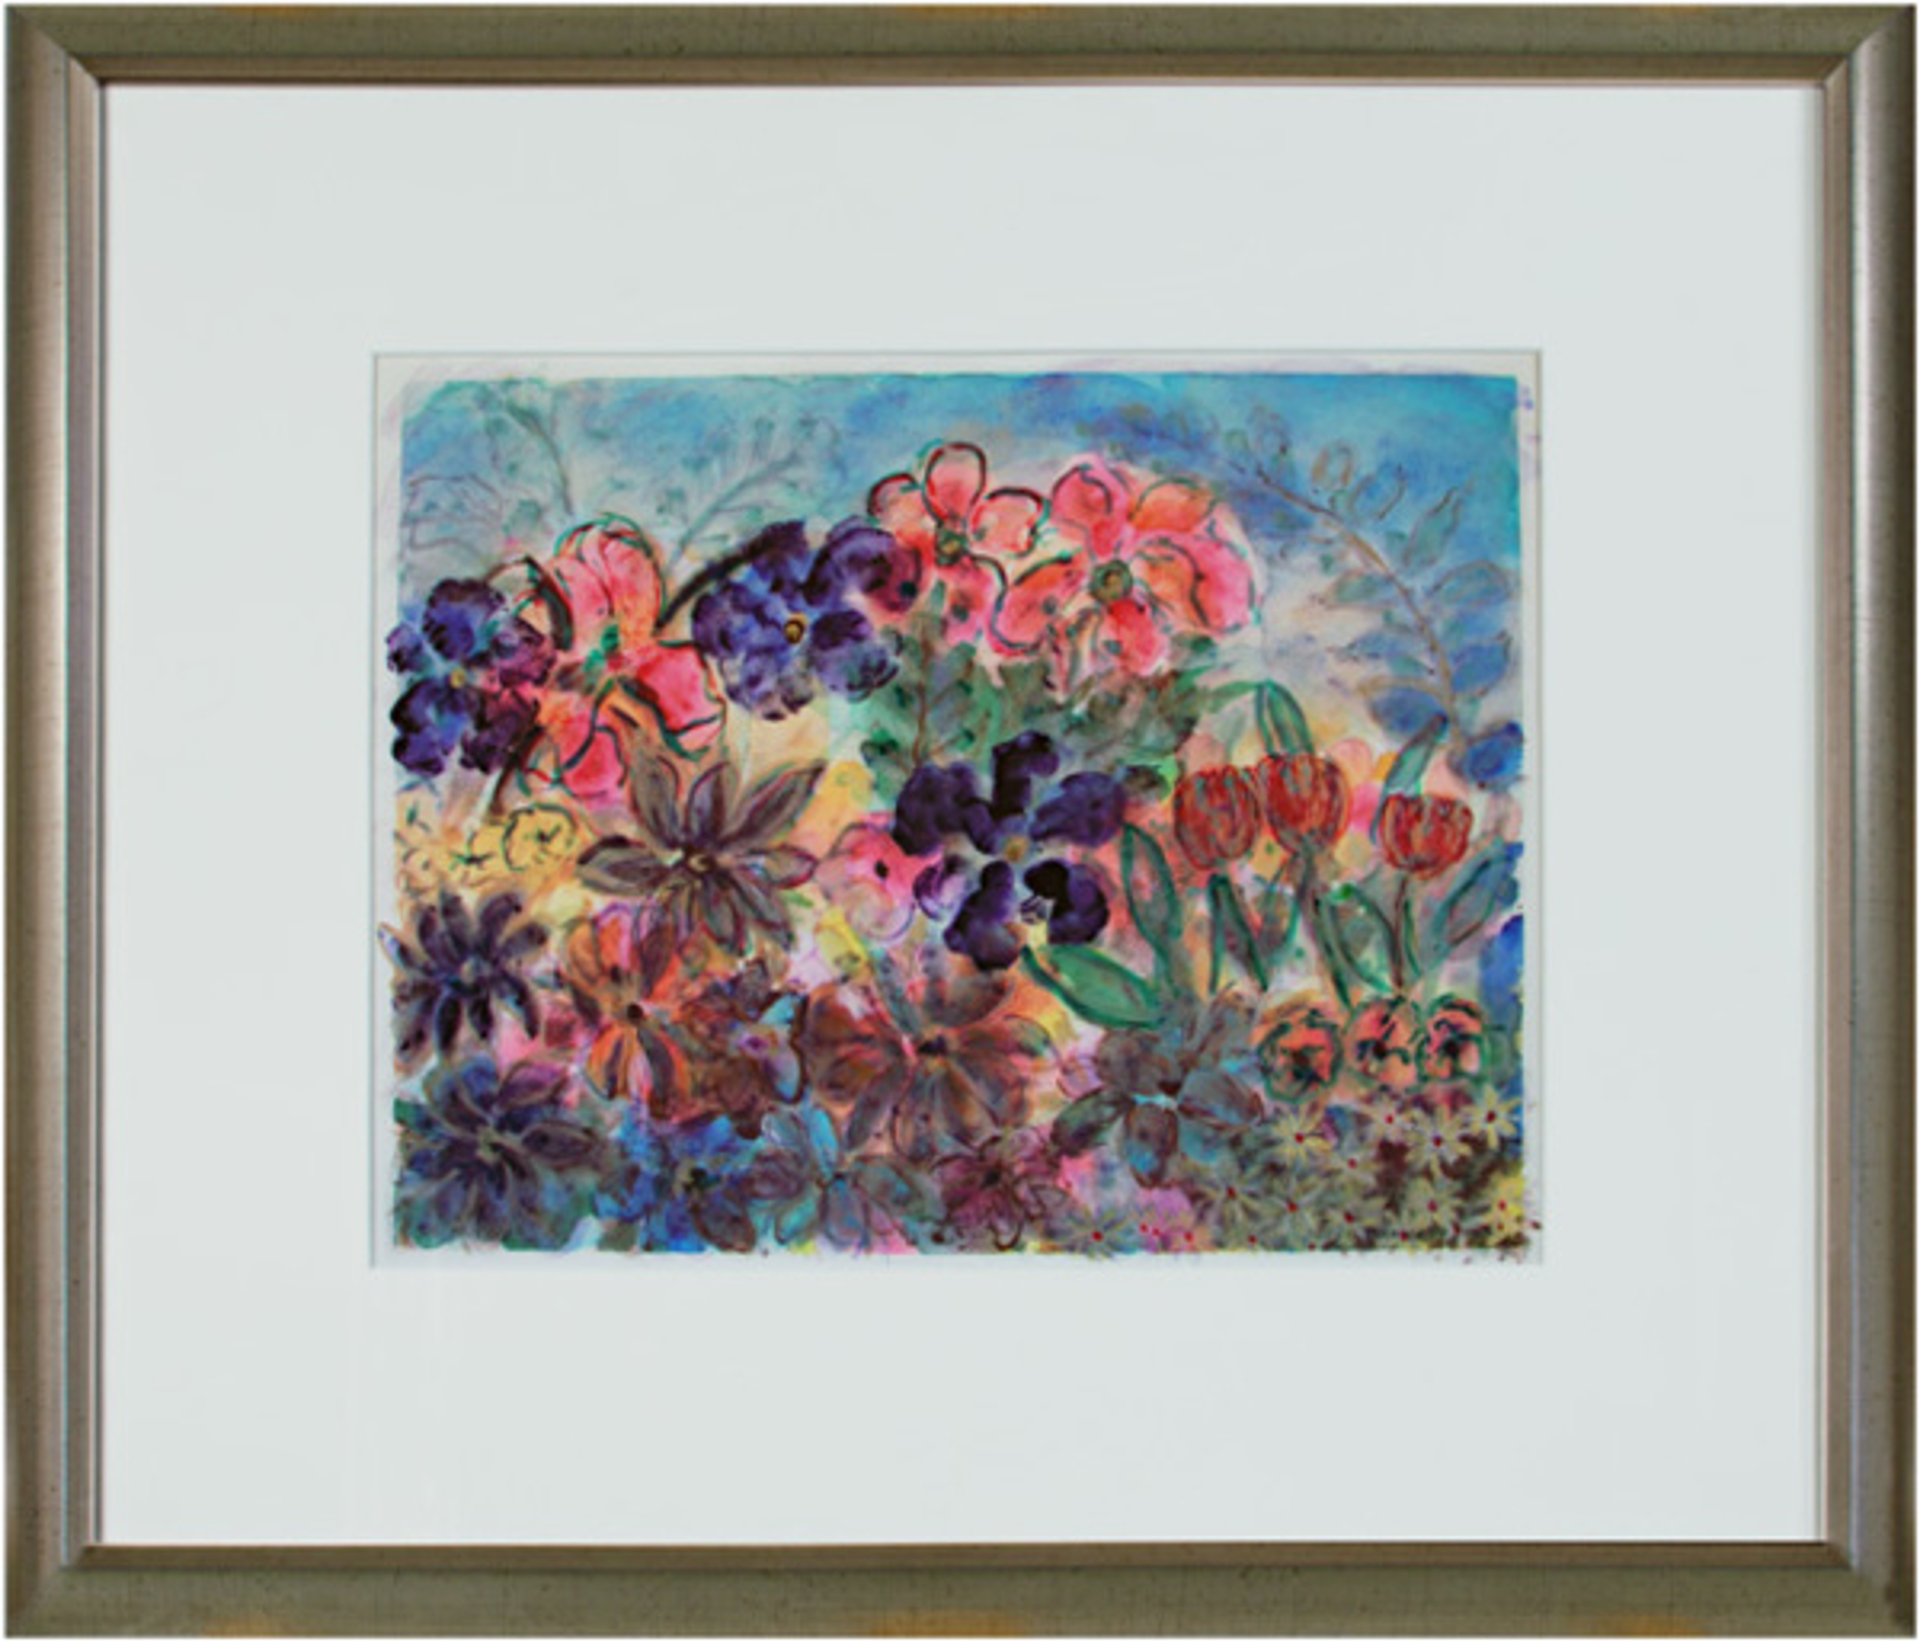 Iridescent Floral Fantasy by David Barnett